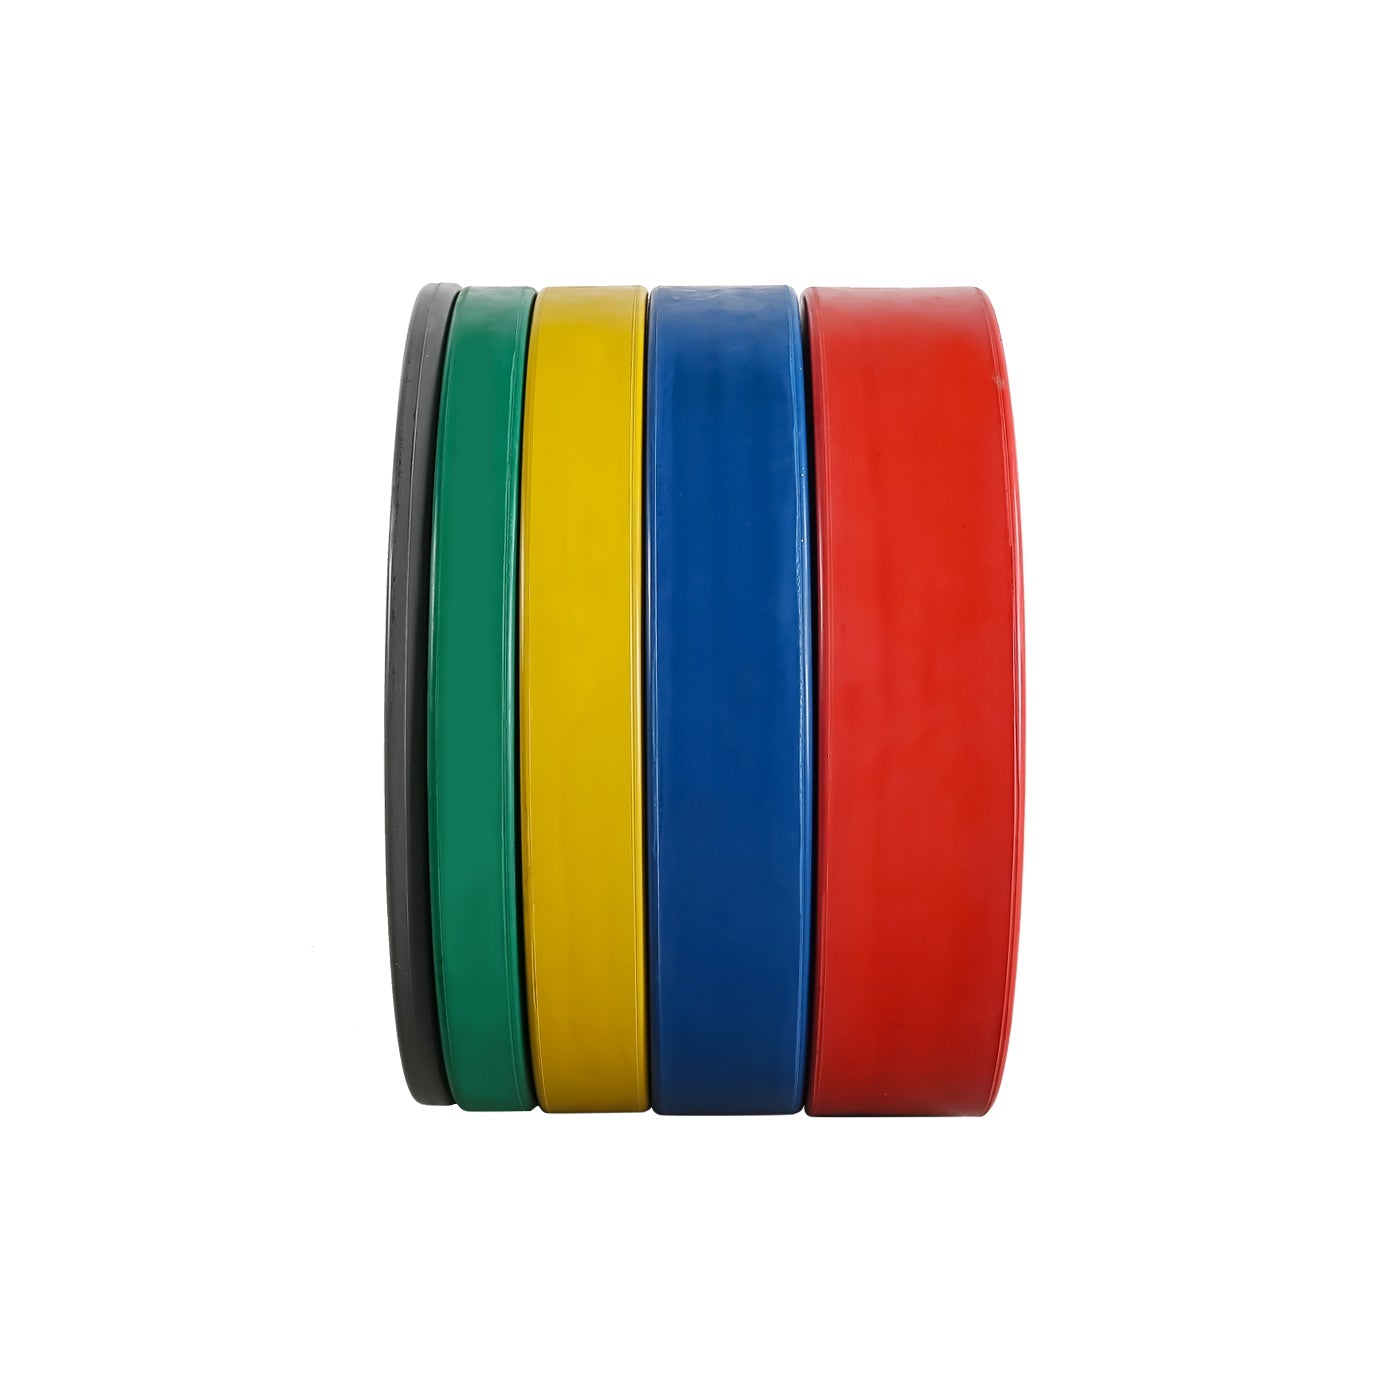 Colour Olympic Rubber Bumper Plates 10KG Pair